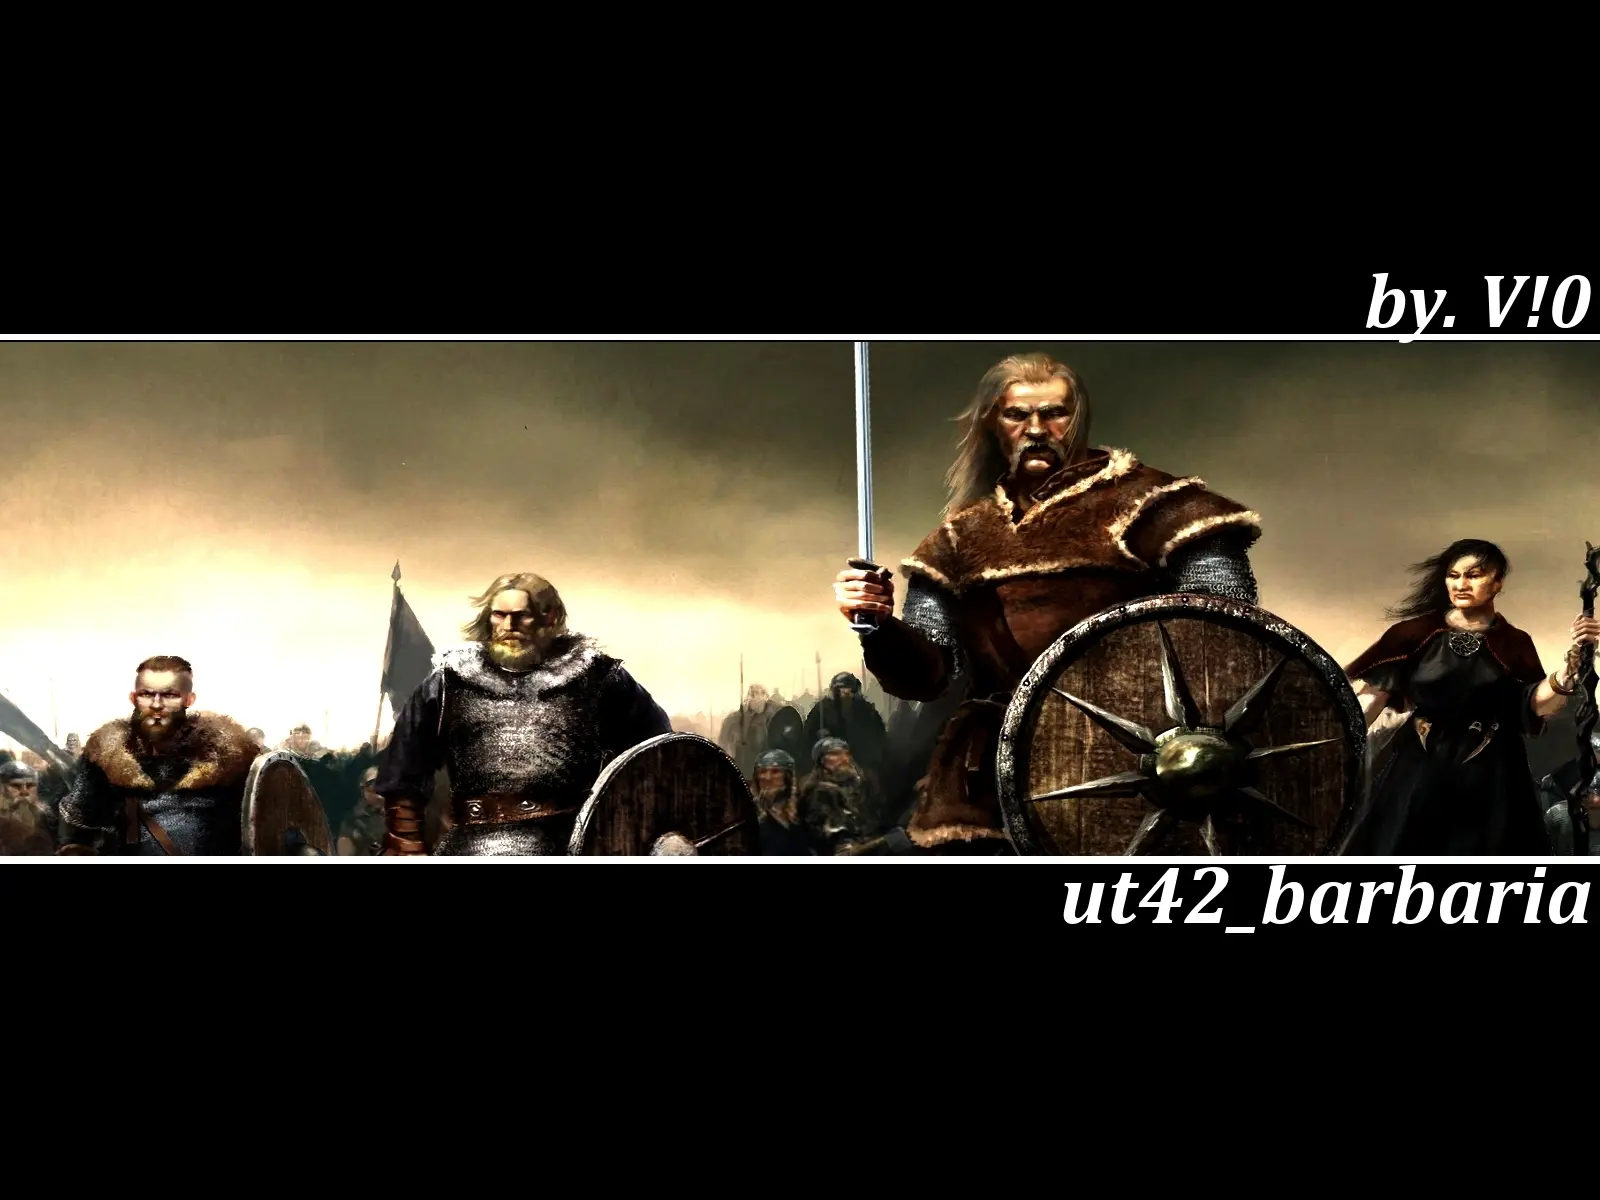 ut42_barbaria